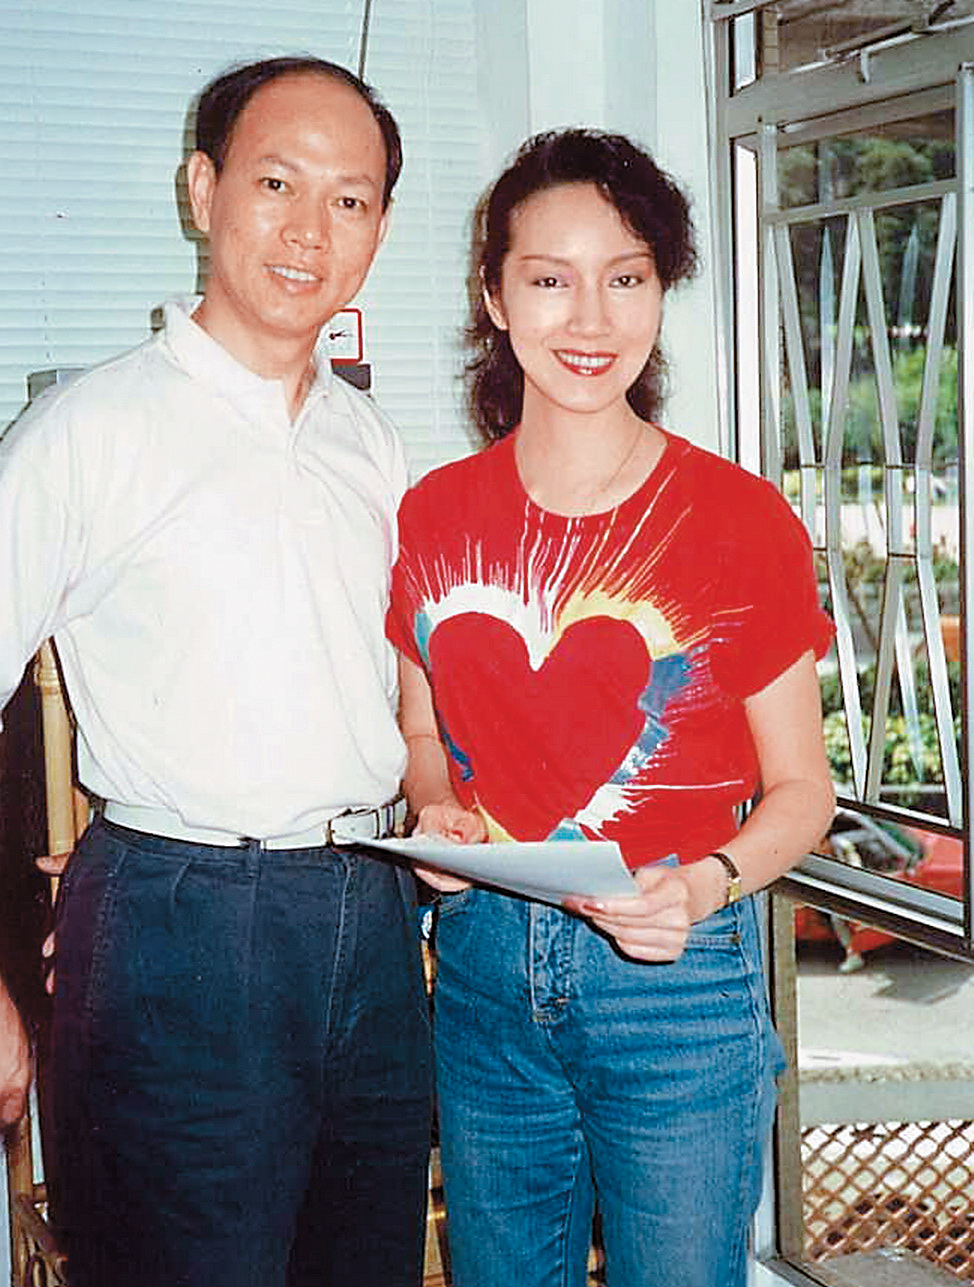 謝雪心(右)曾為「八和會館」副主席。